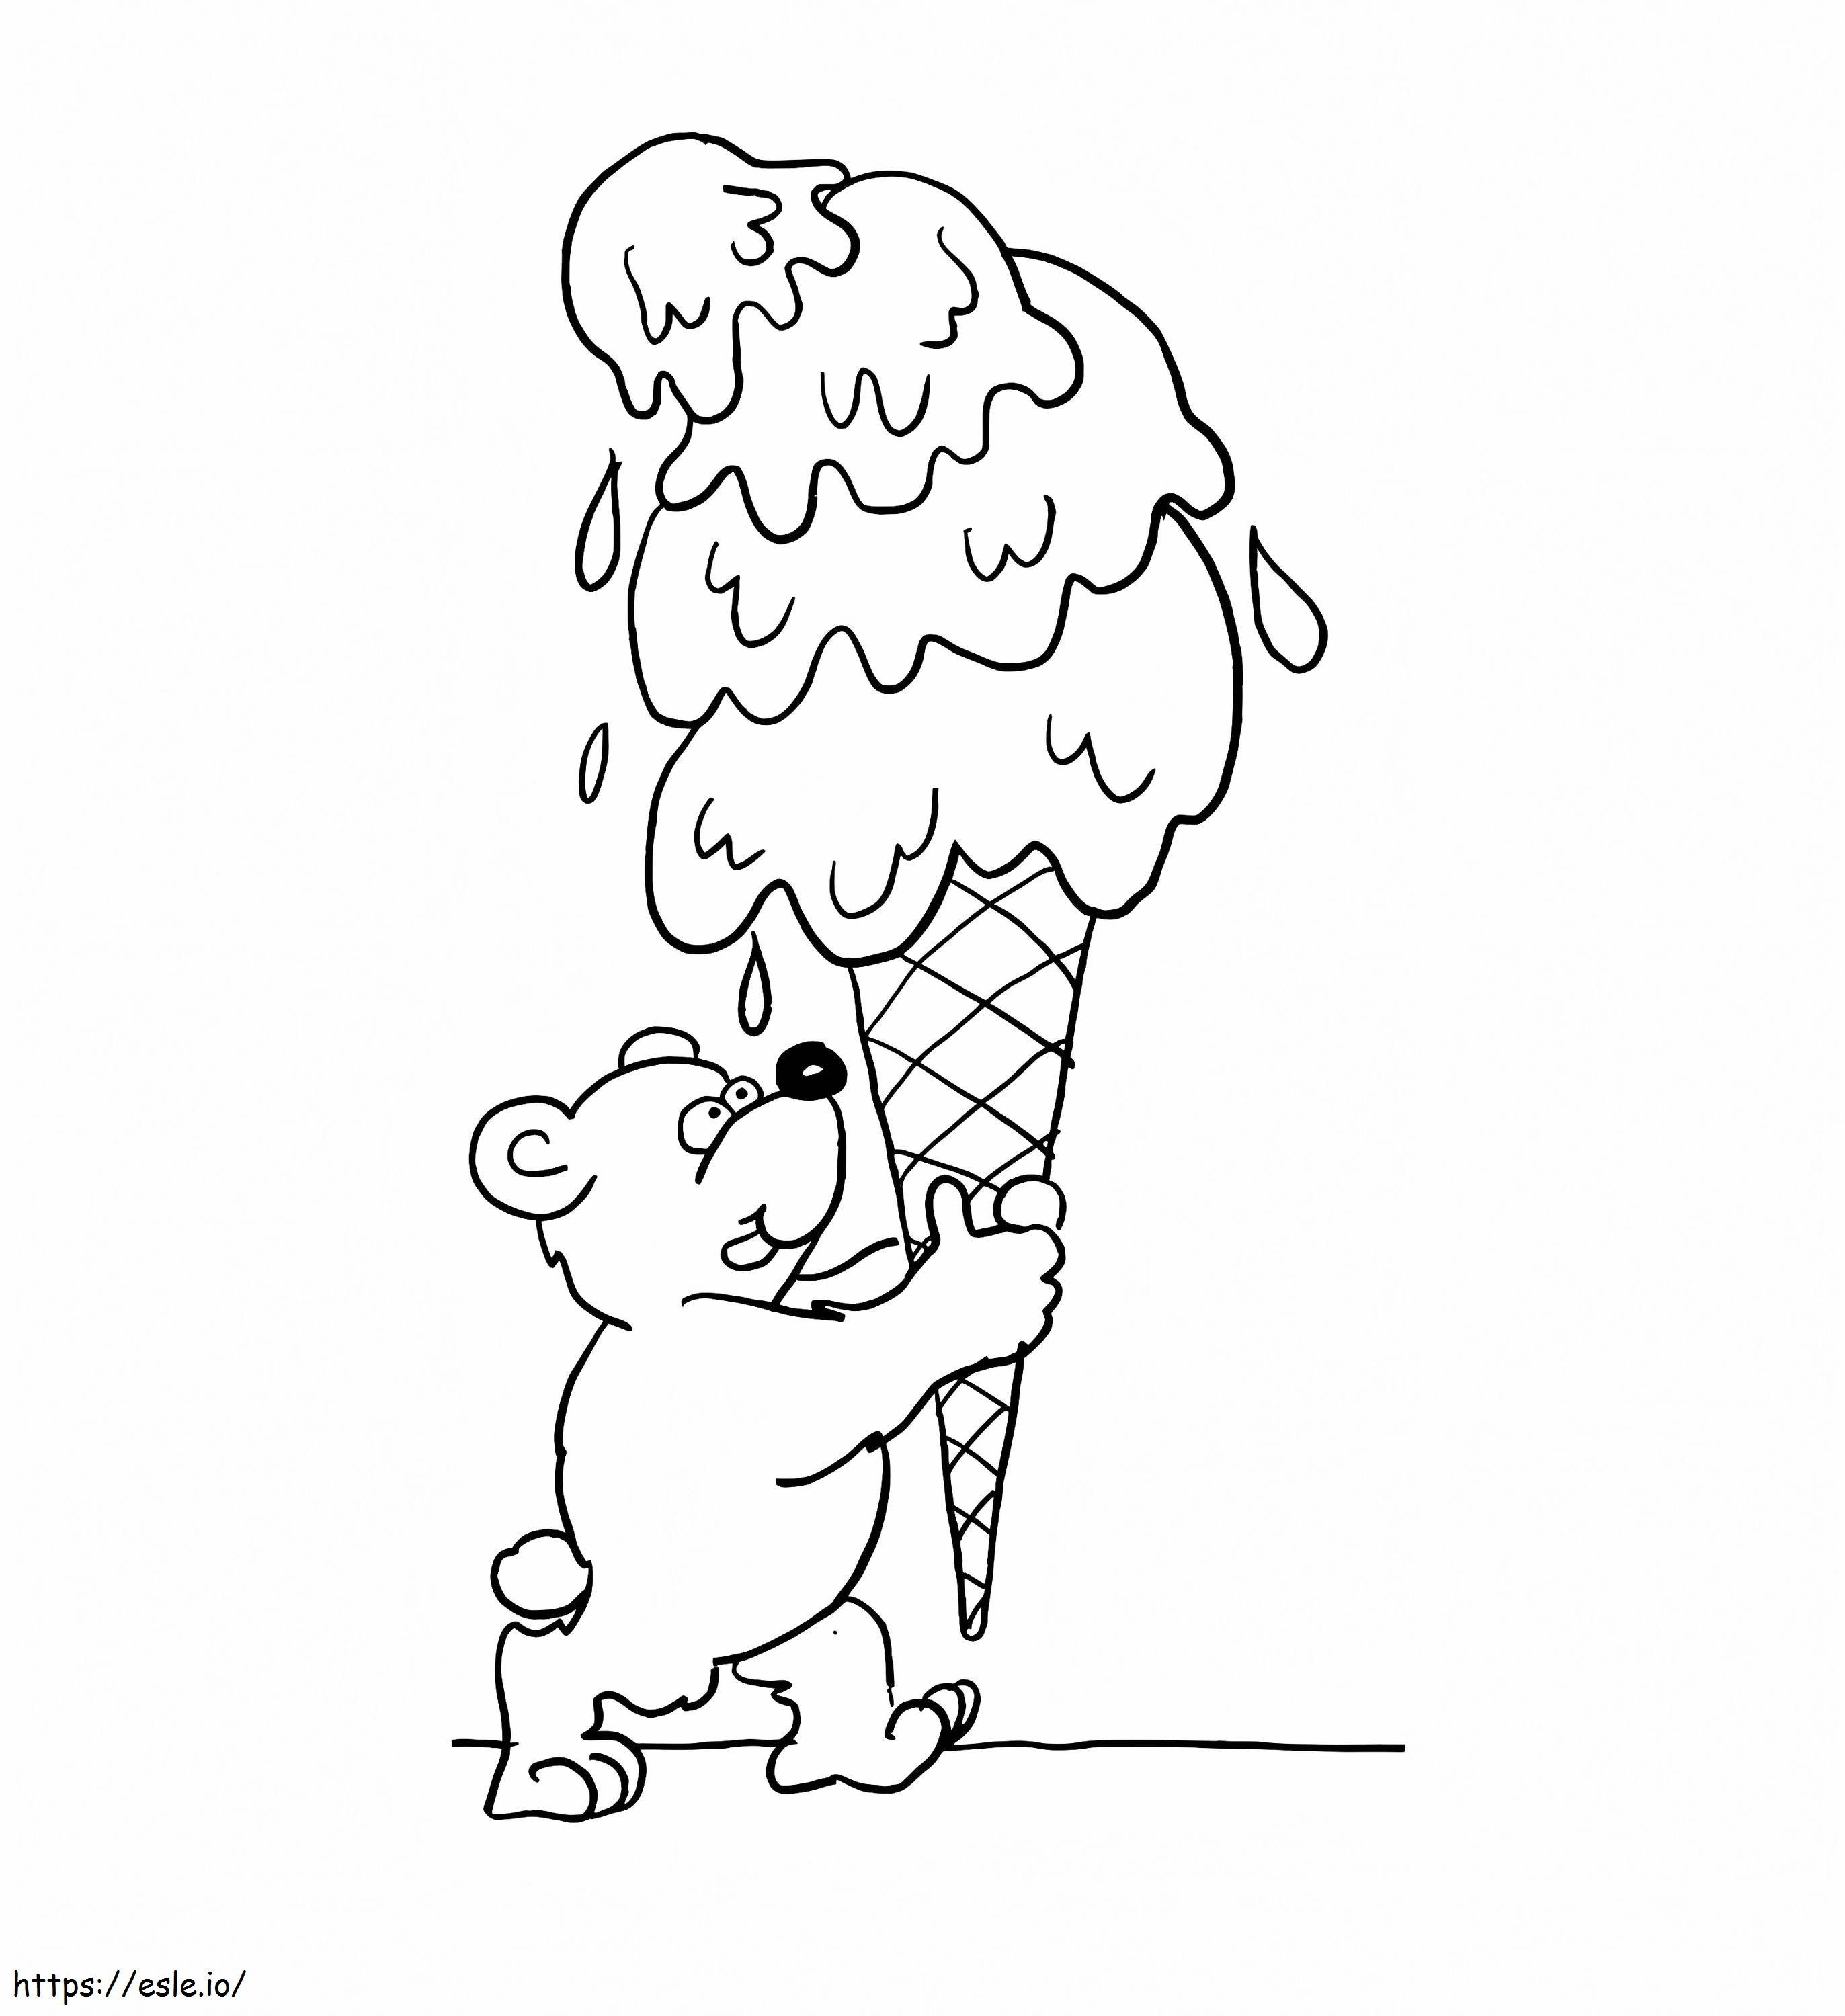 Ursuleț și înghețată de colorat